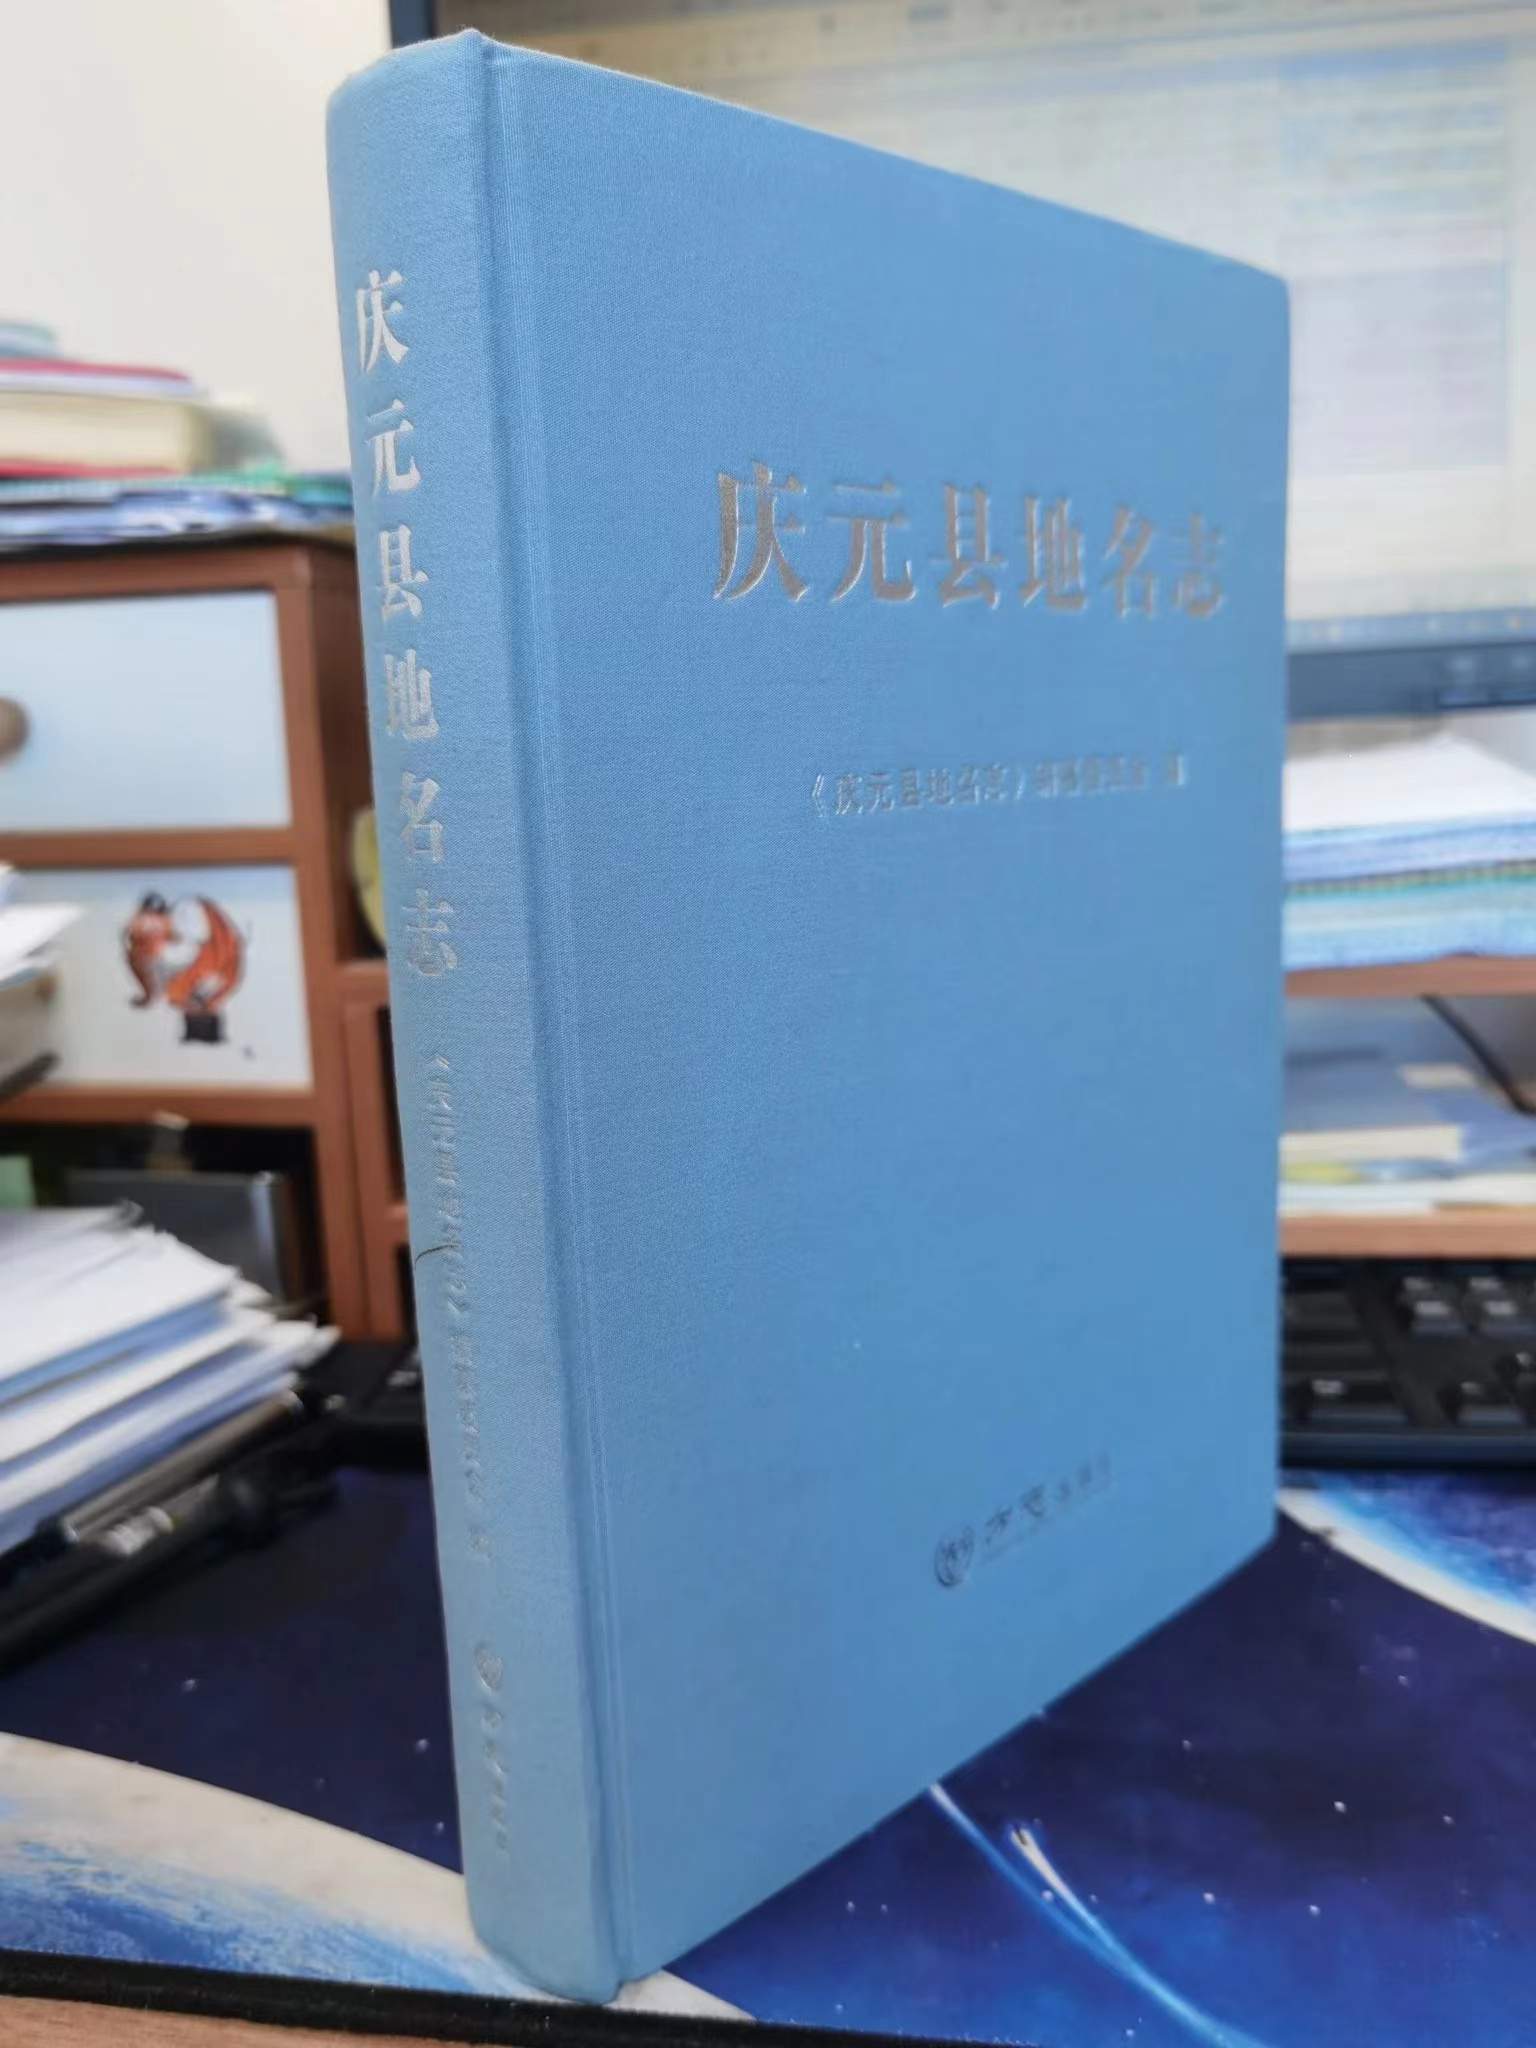 庆元县地名志 精装16开 方志出版社 K925.54